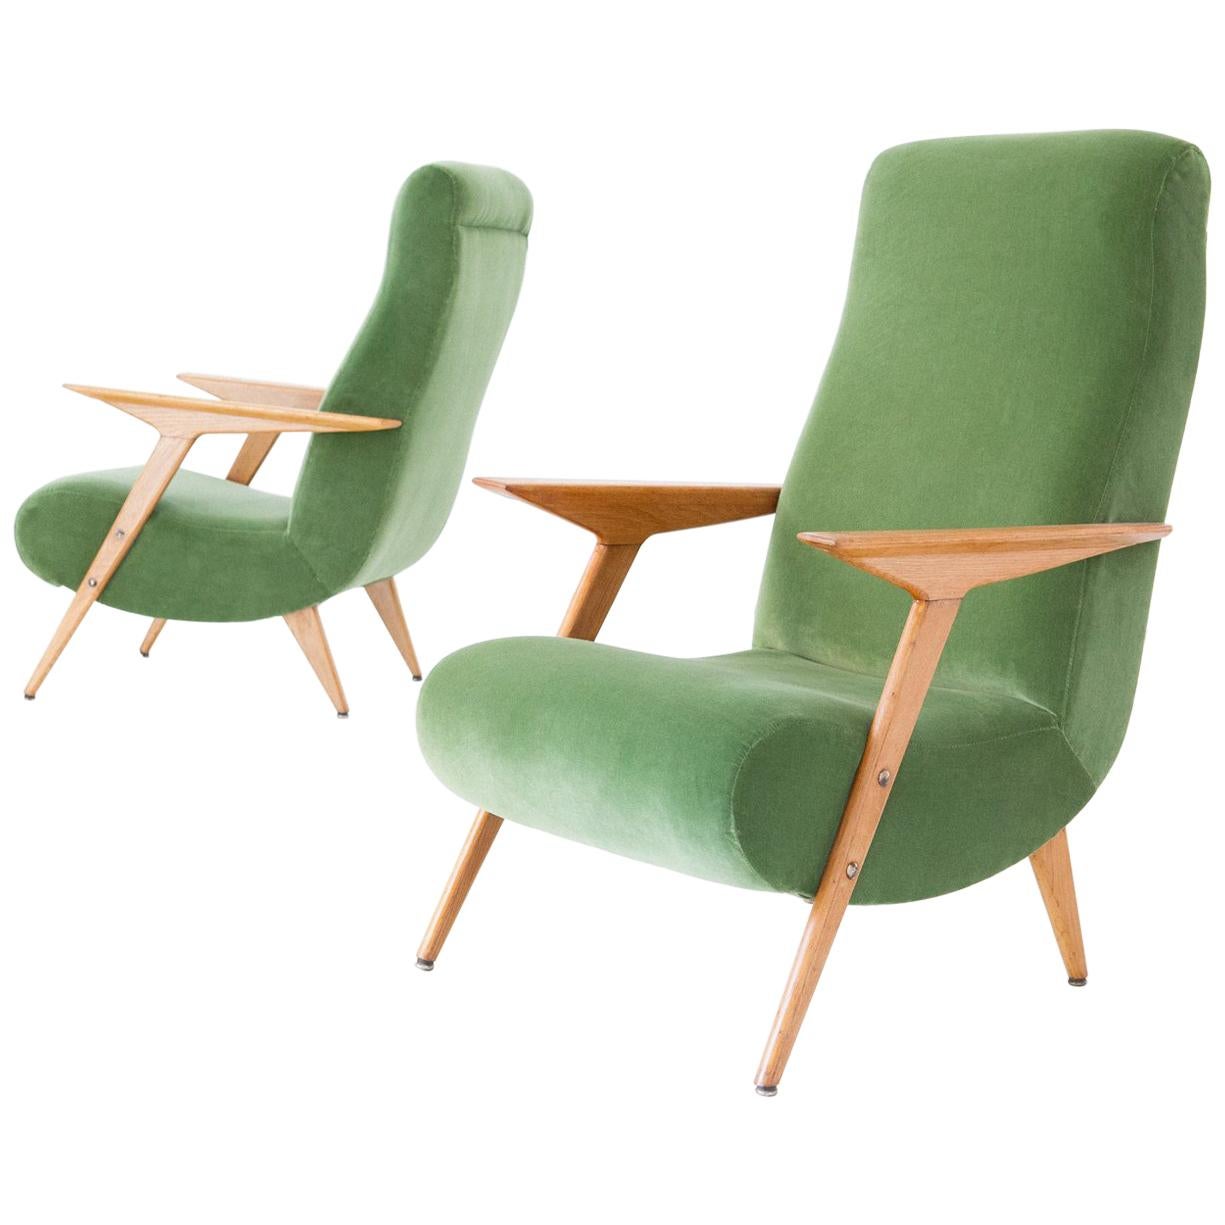 Pair of Italian Mid-Century Modern Oak Wood and Green Velvet Armchairs, 1950